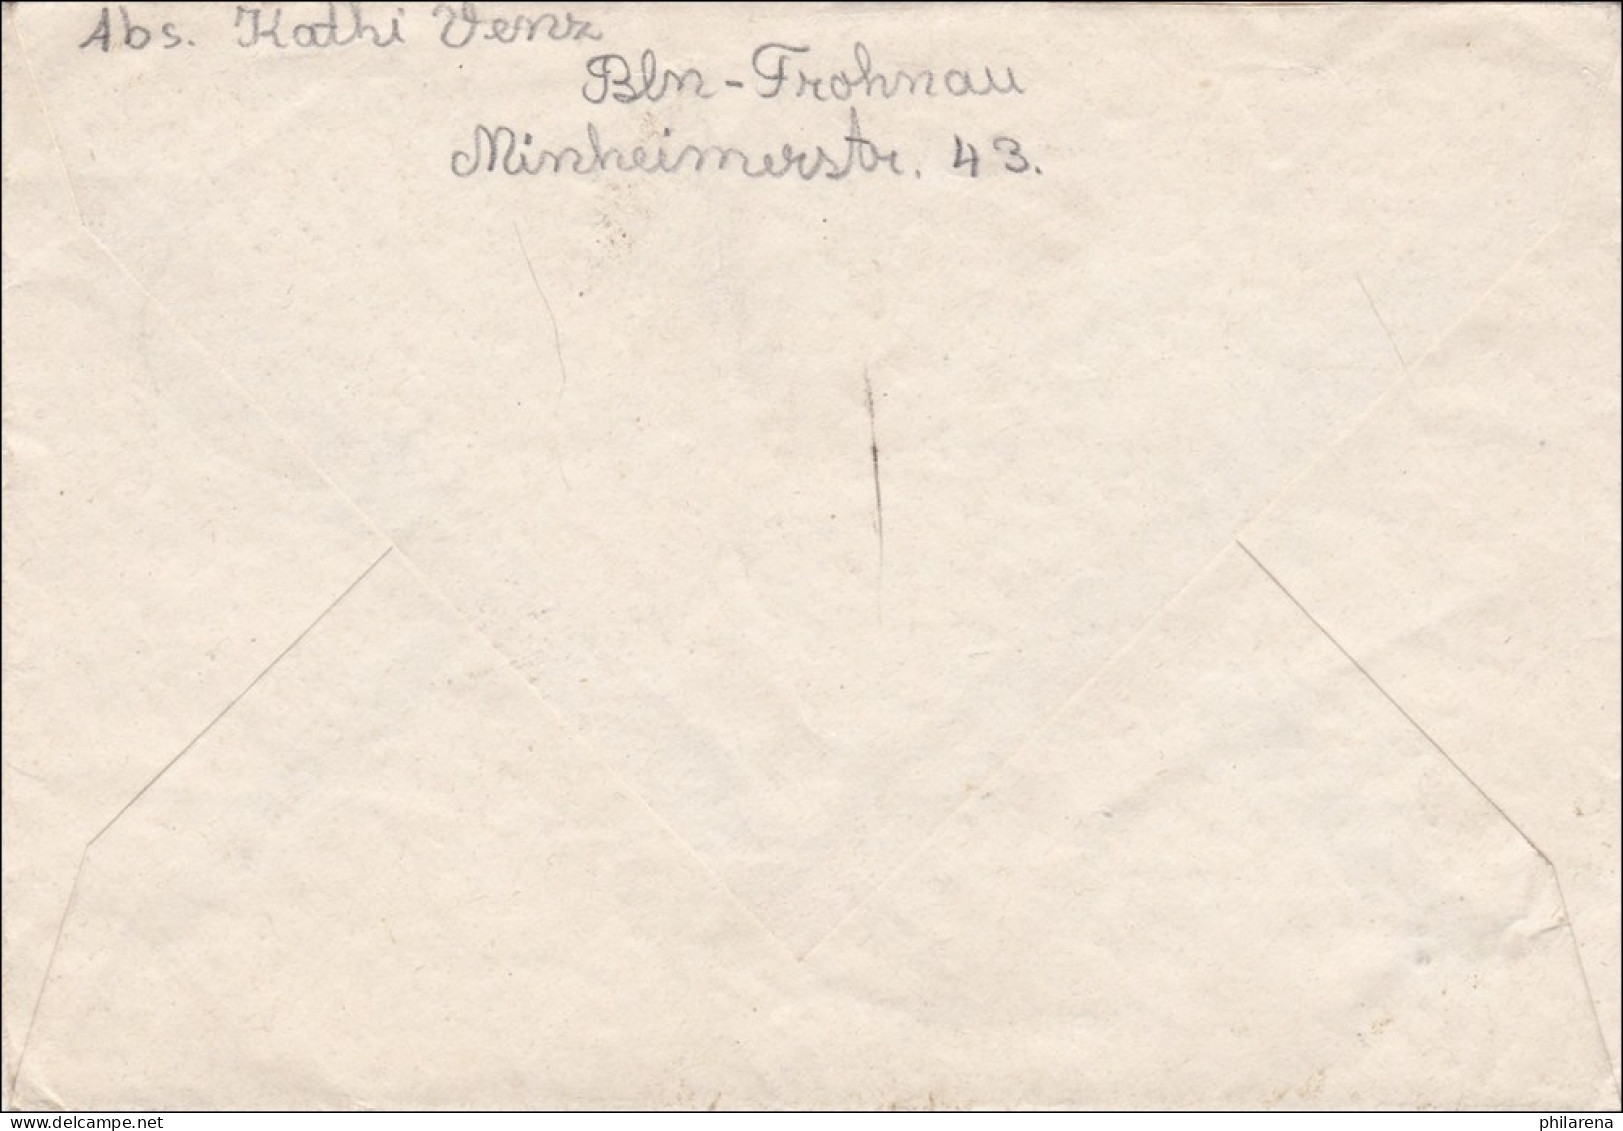 Luftpost 1949 Nach Niedernhausen - Covers & Documents